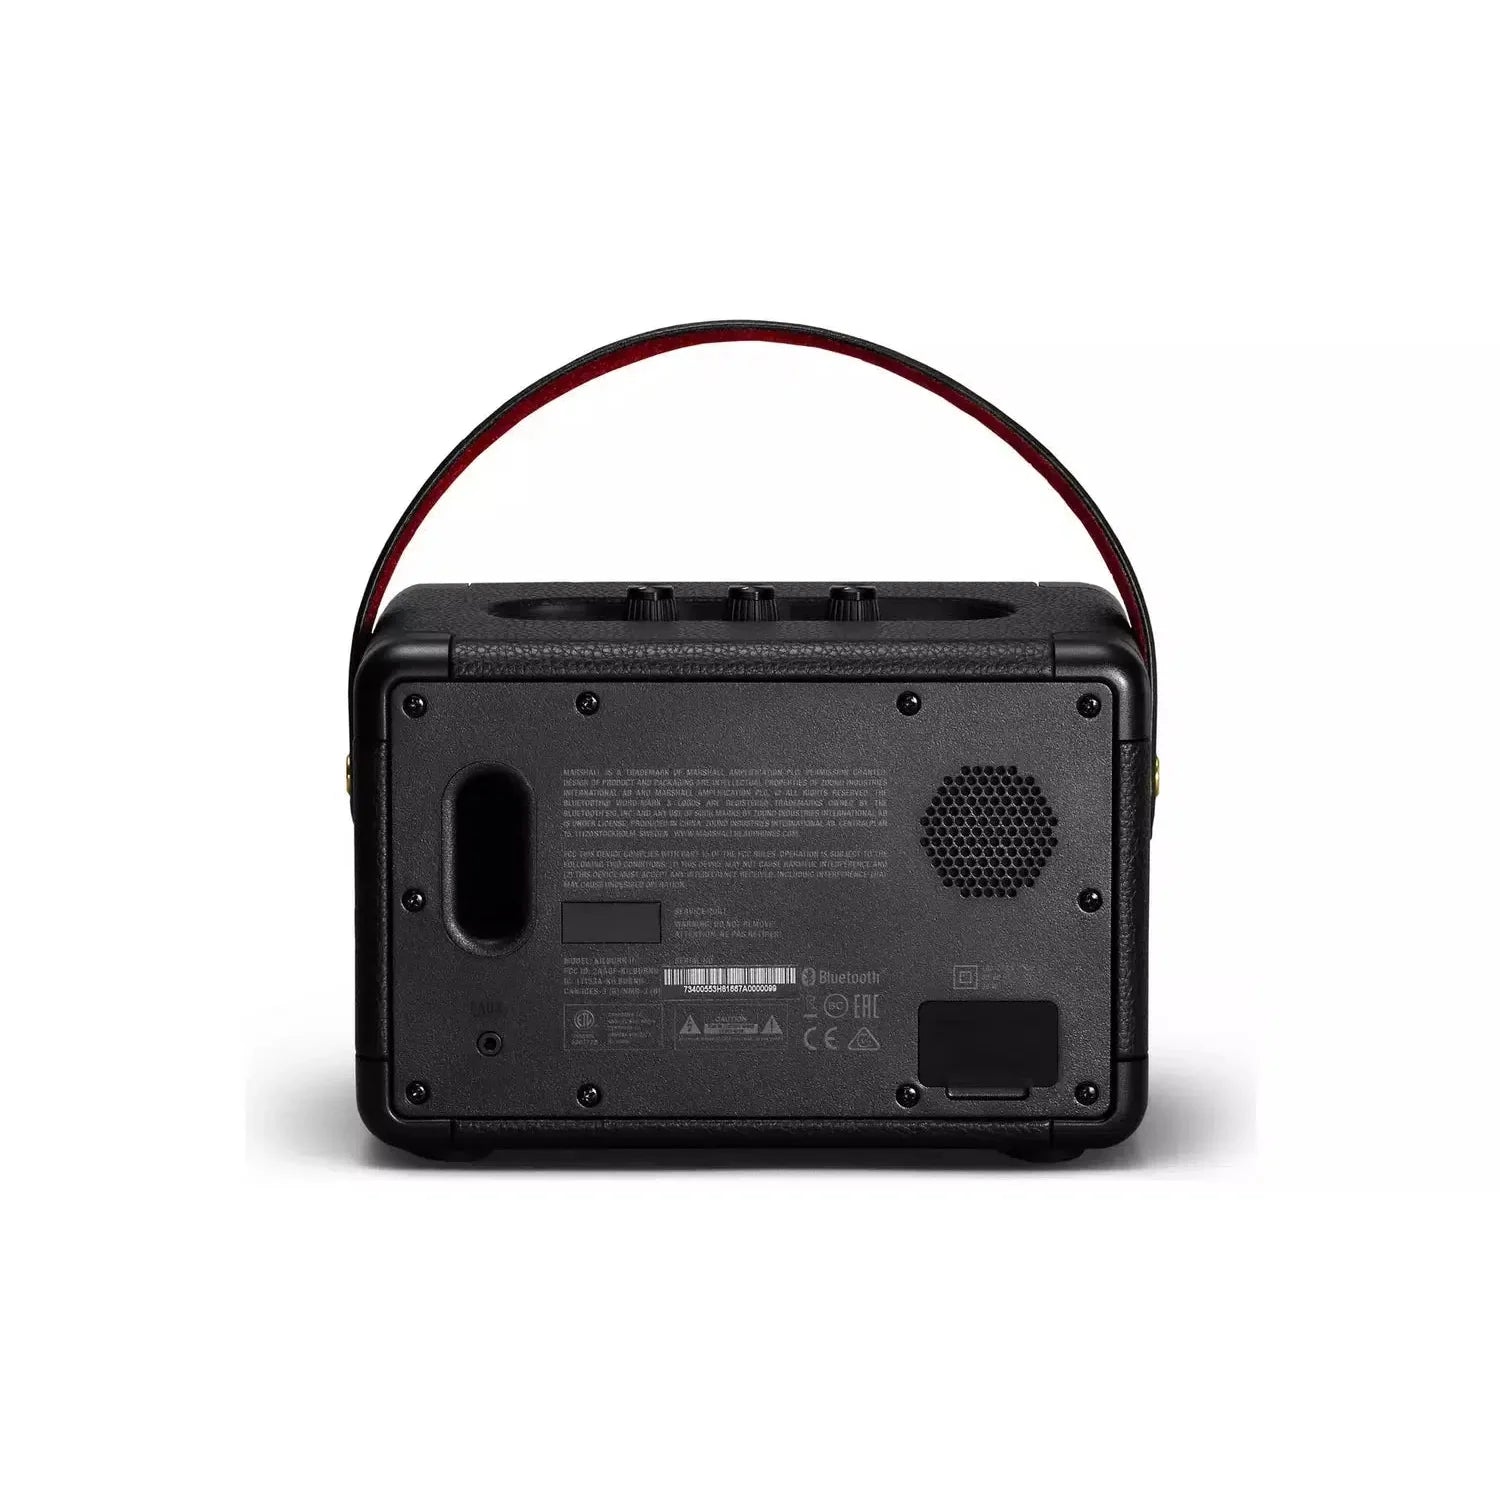 Marshall Kilburn II Bluetooth Speaker - Black - Refurbished Excellent